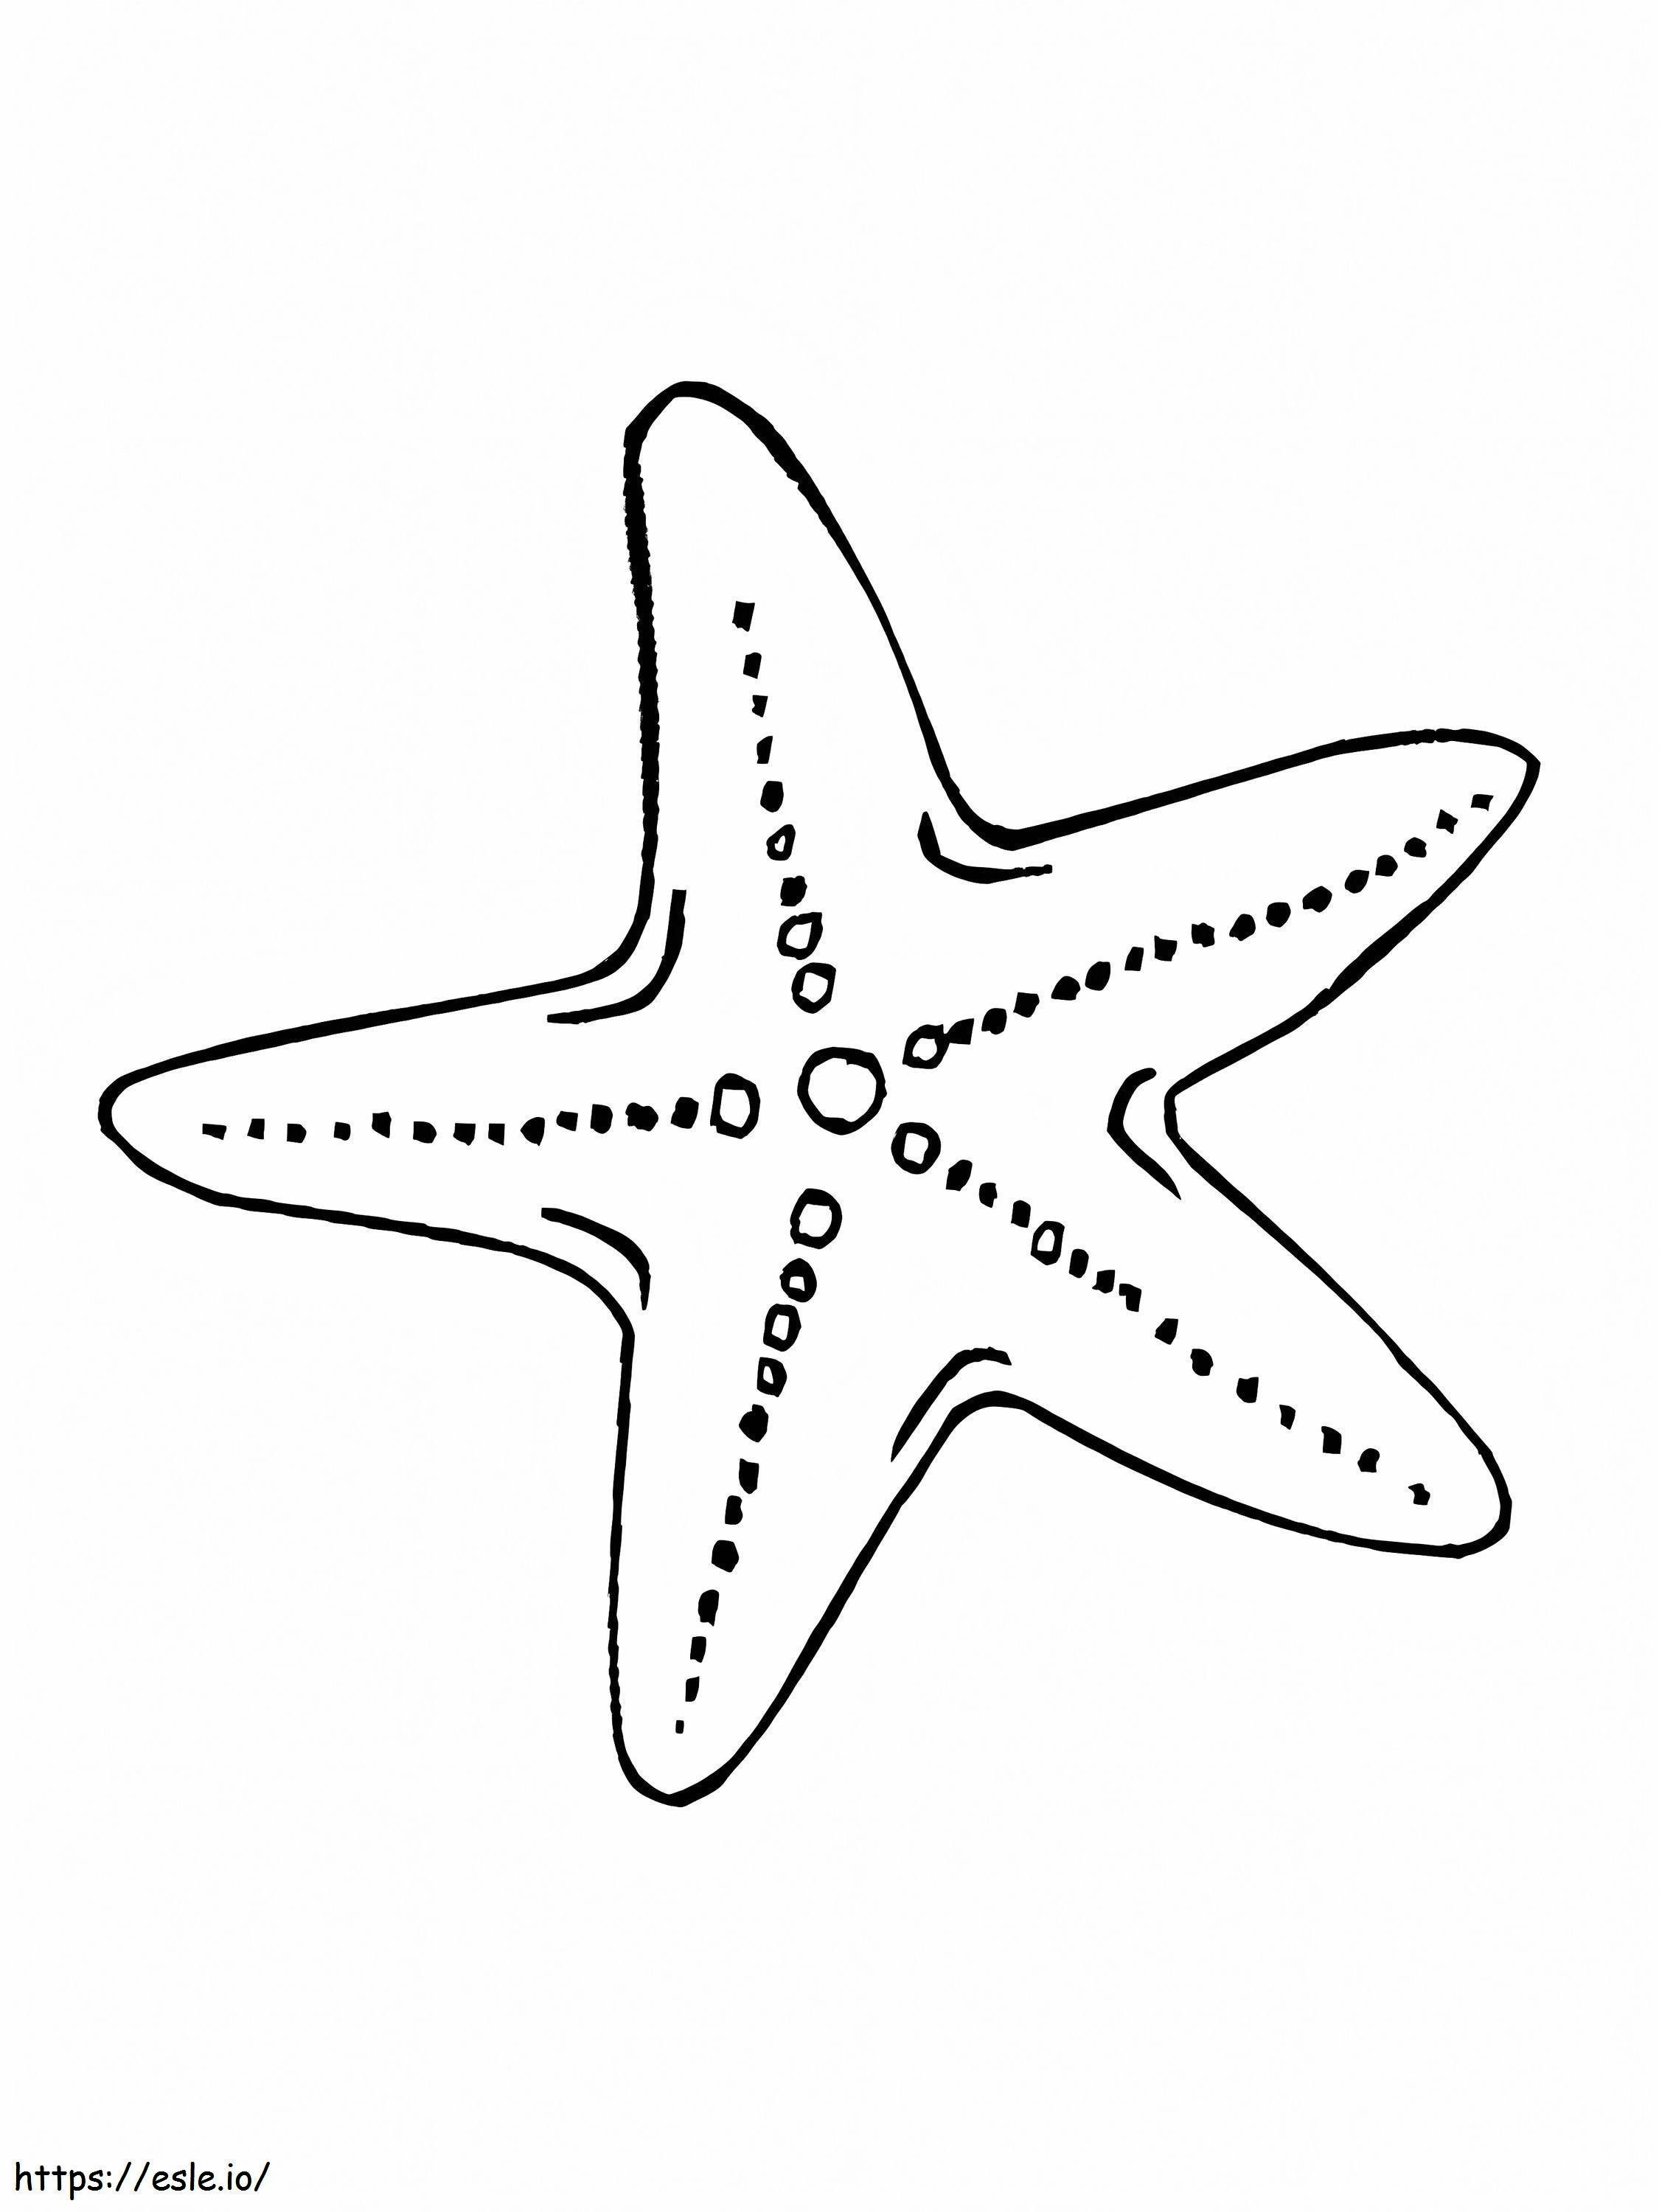 Patrick Bintang Laut Gambar Mewarnai